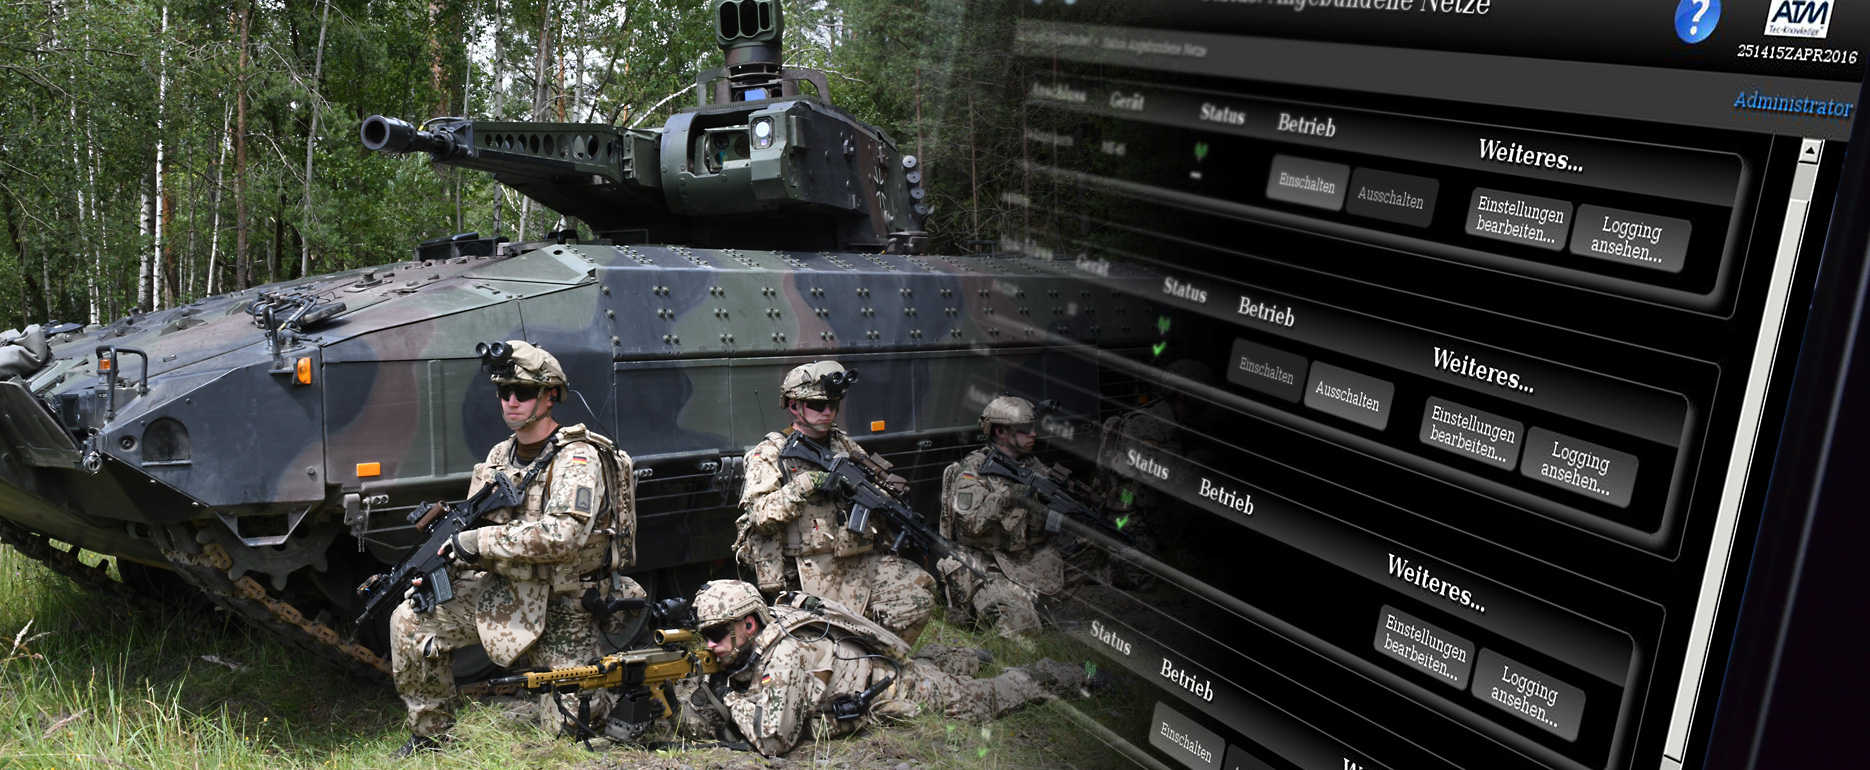 Ein Zug mit Soldaten vor dem Schützenpanzer PUMA und Softwareoberfläche